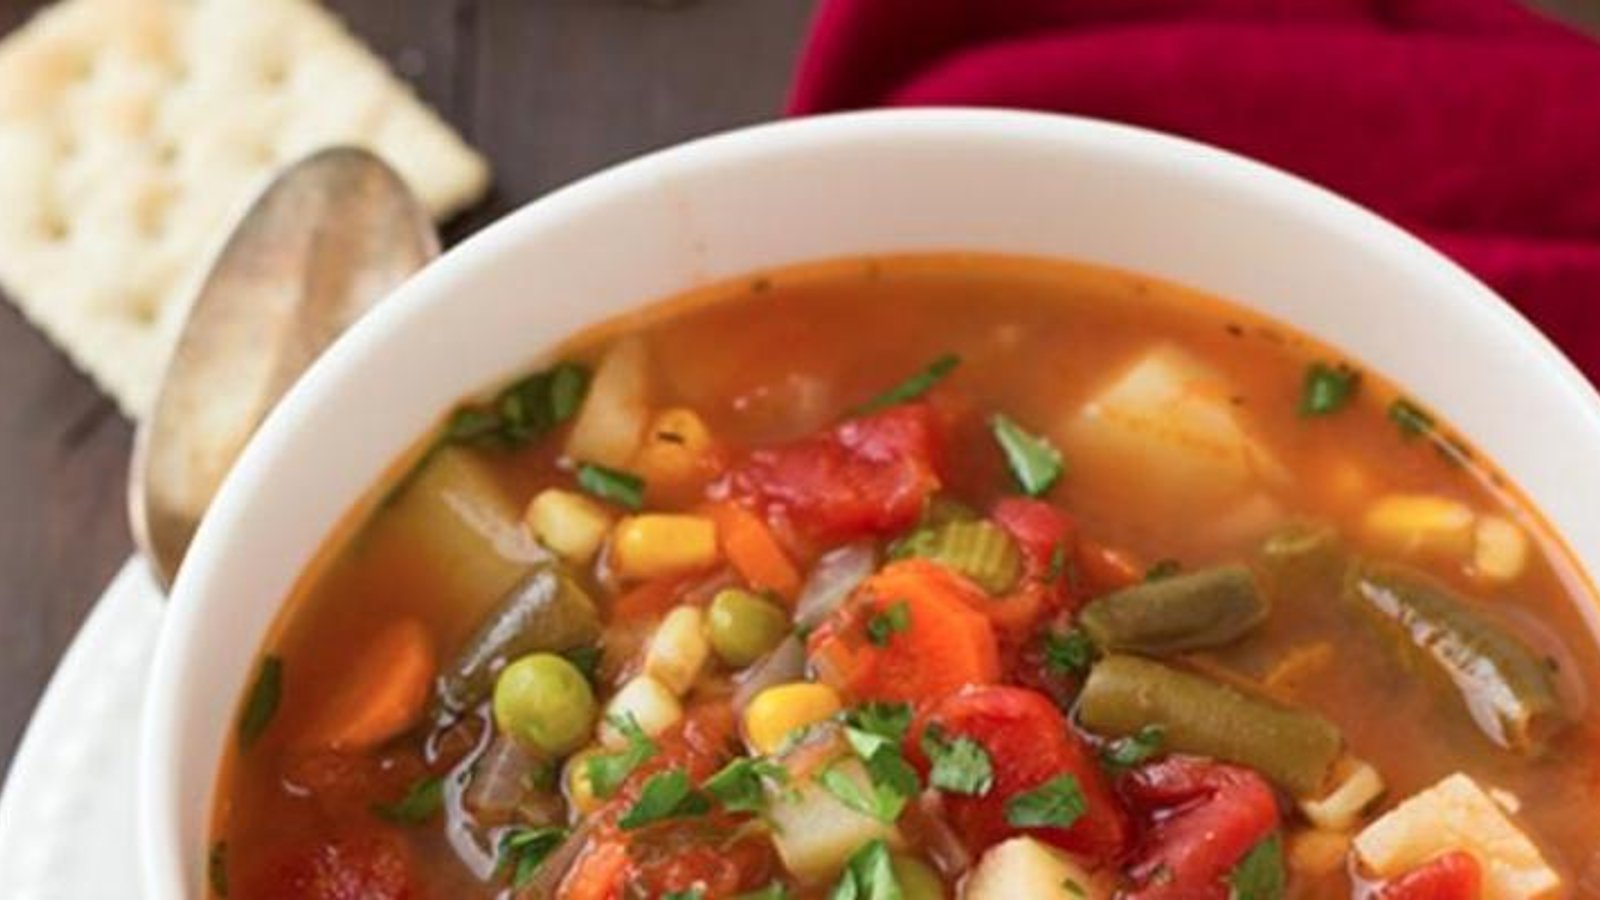 Recette: La soupe aux légumes si réconfortante!